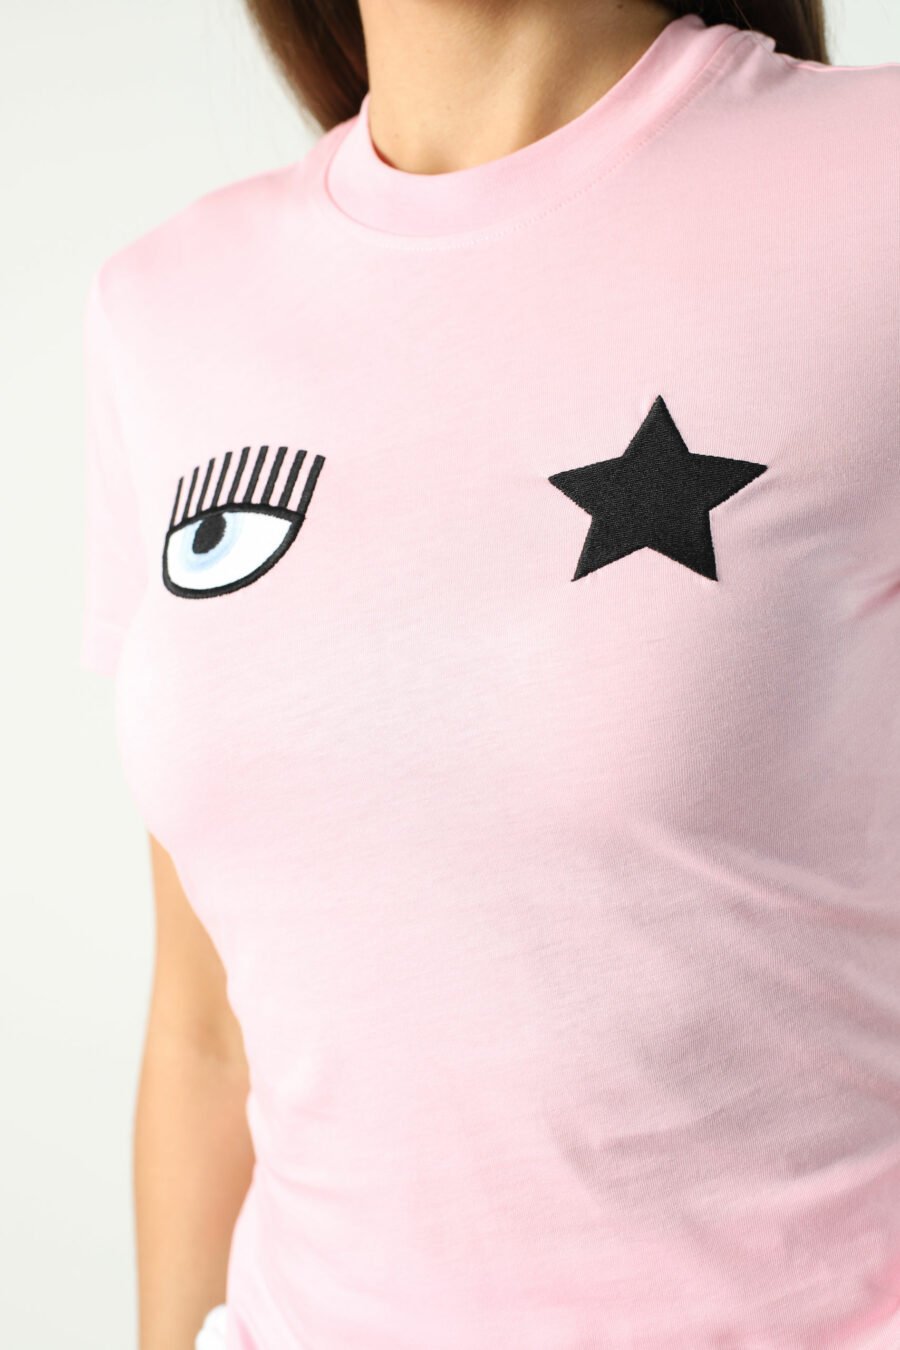 Camiseta rosa con ojo y estrella - Photos 2697